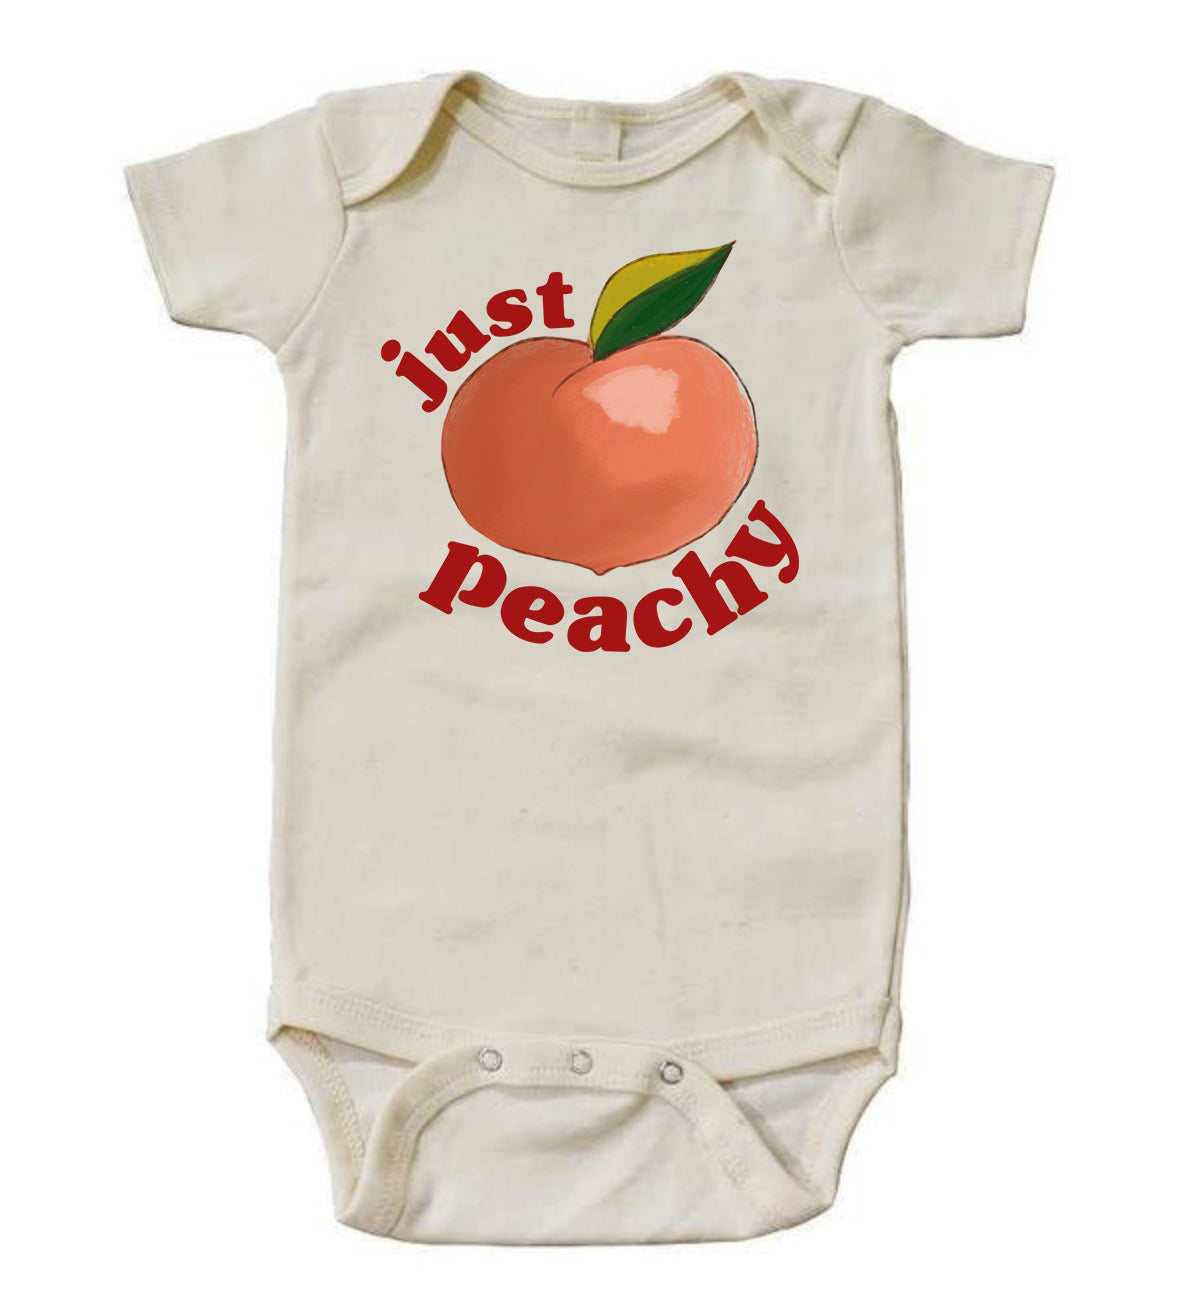 Just Peachy [Bodysuit]